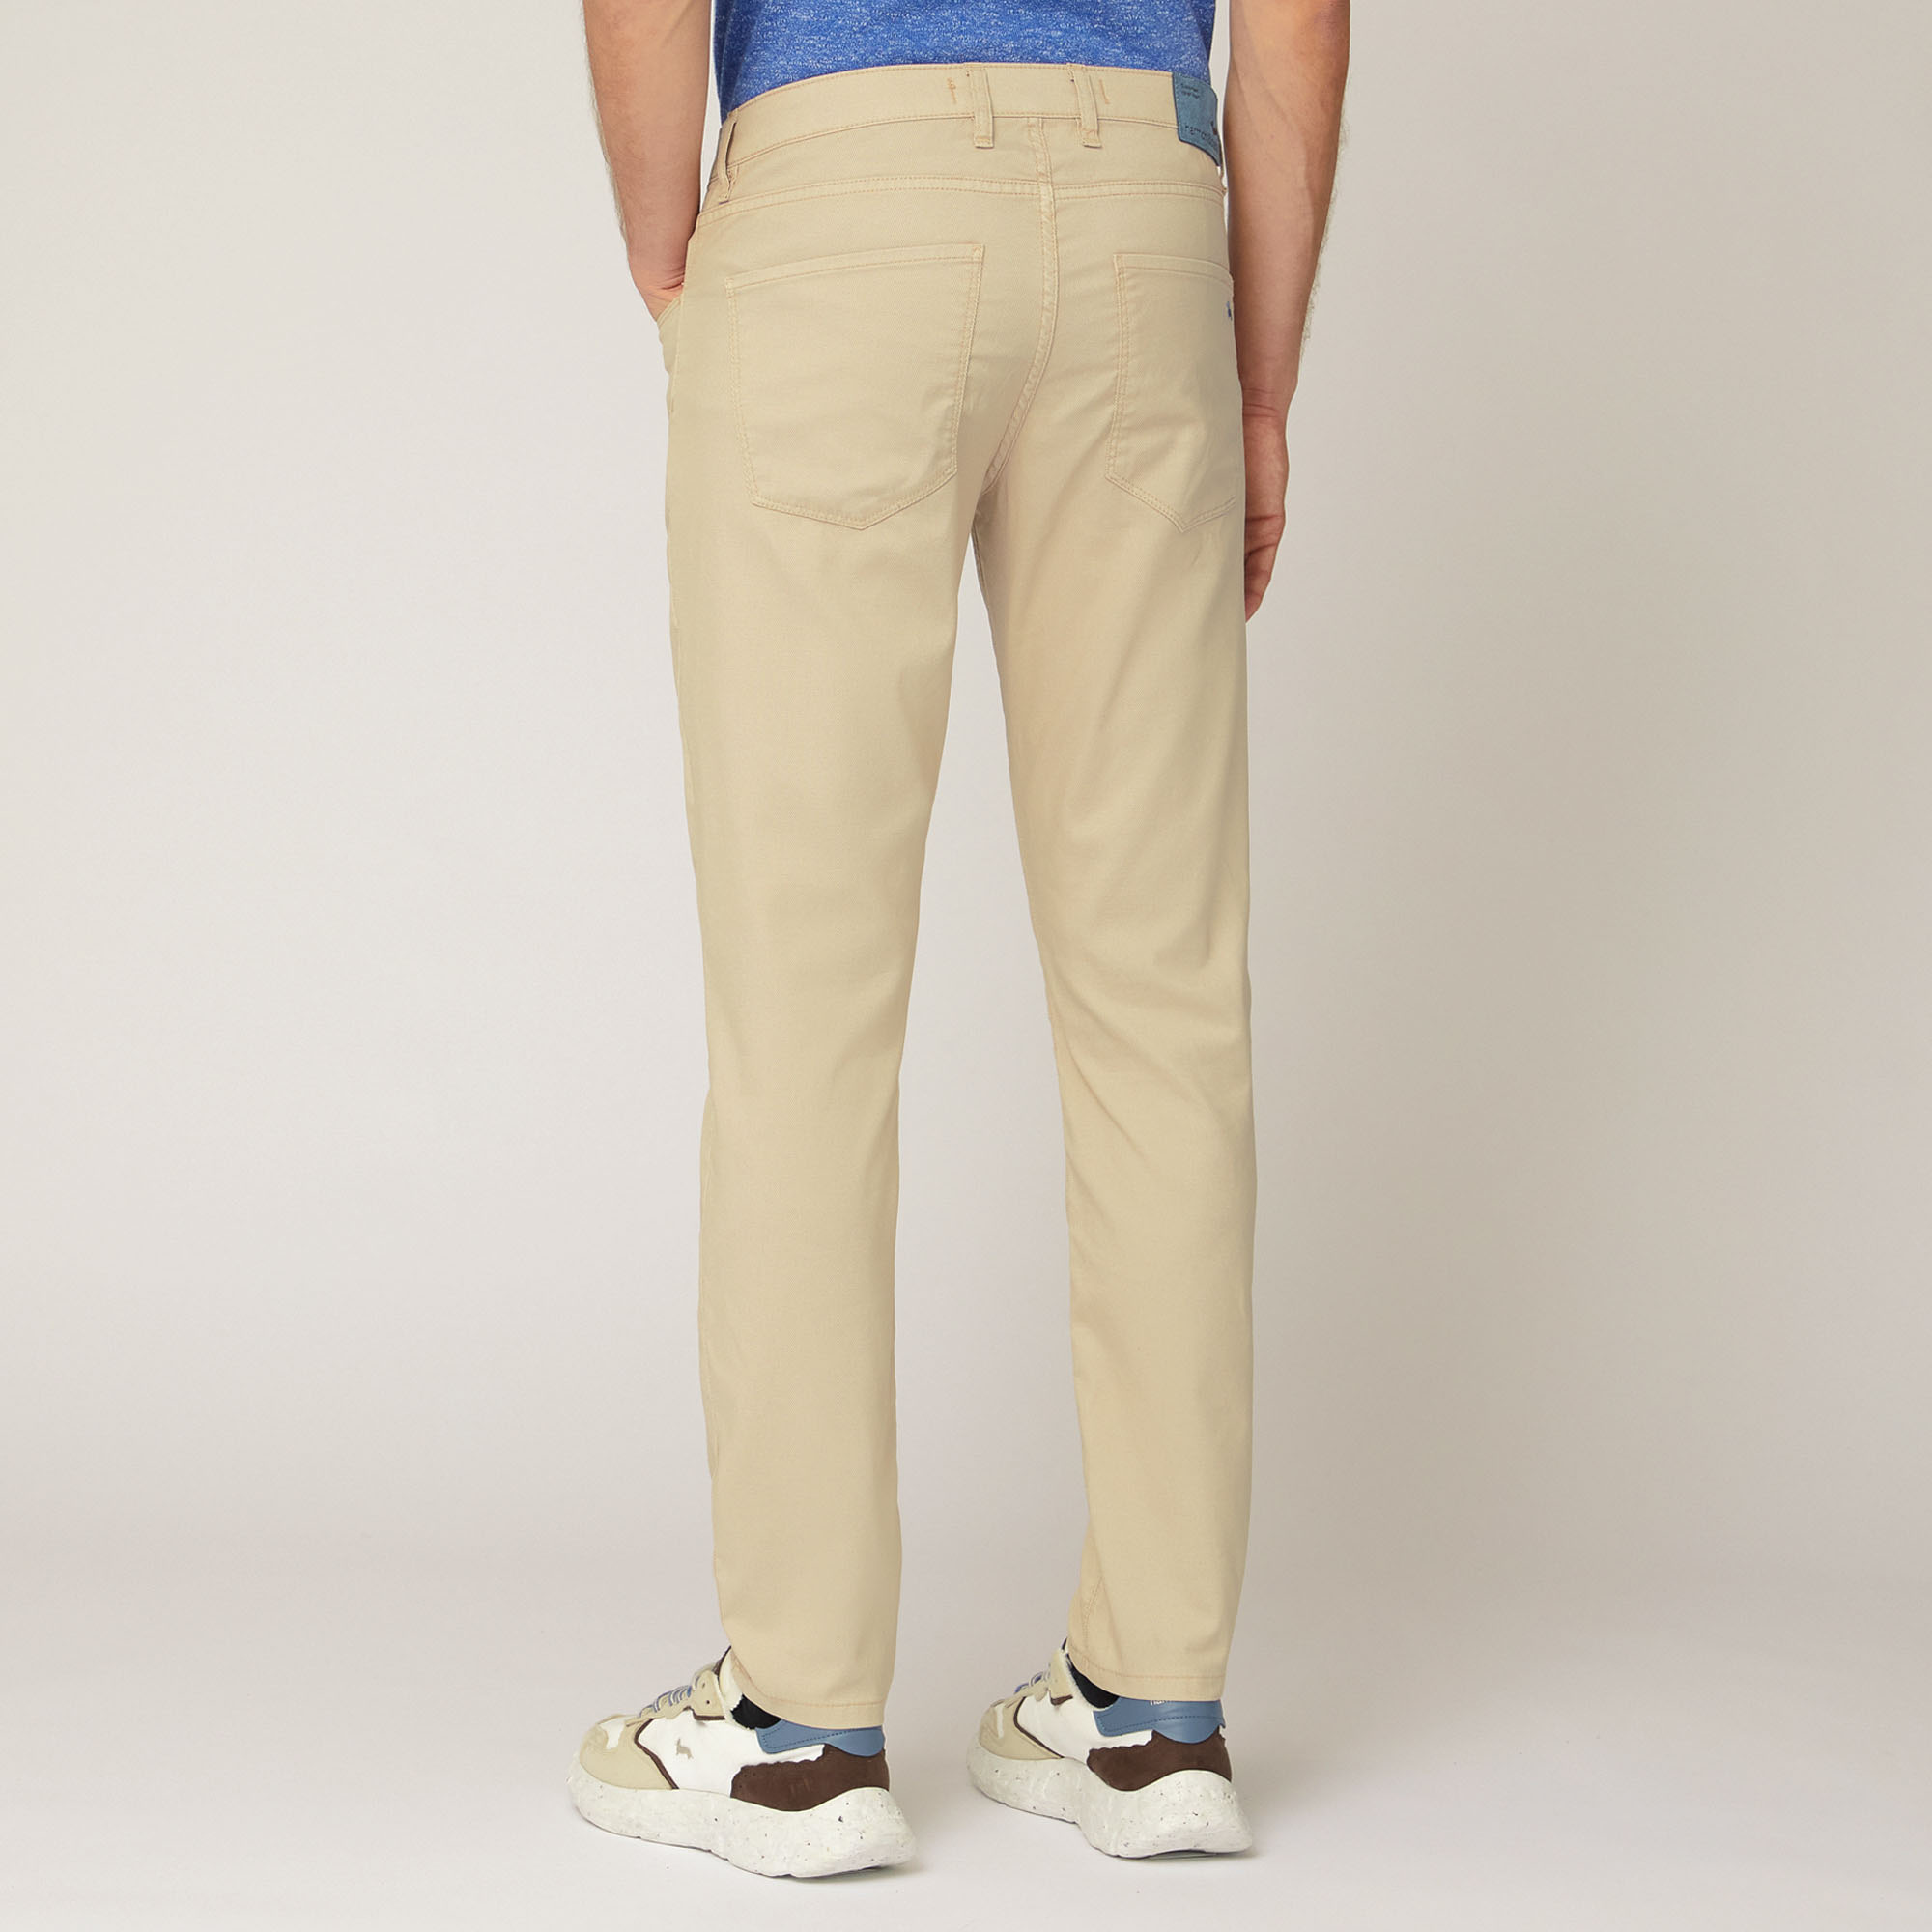 Slim Five-Pocket Pants, Beige, large image number 1